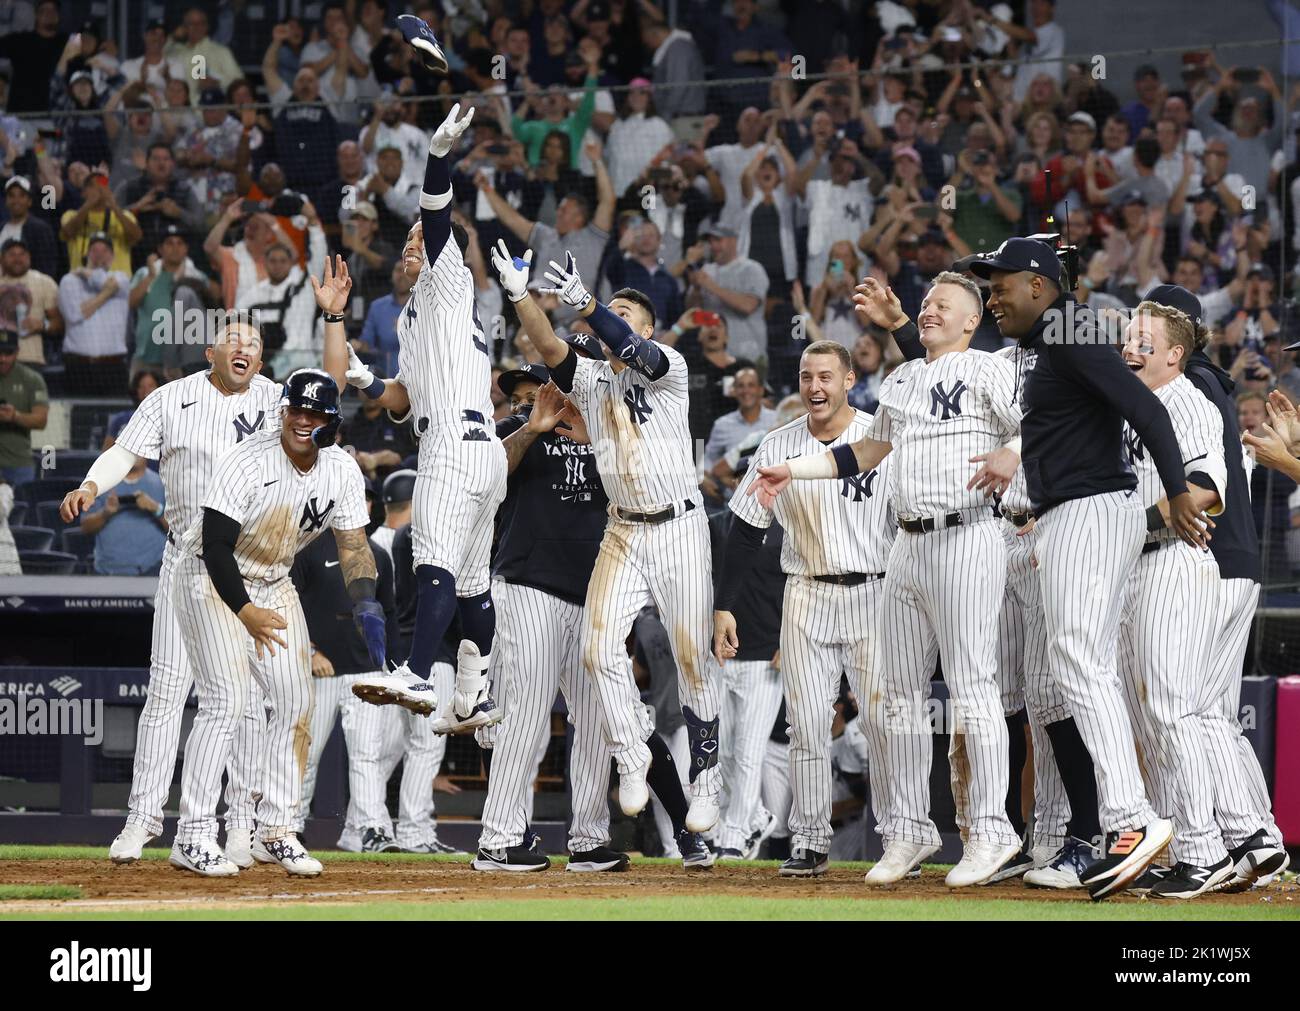 New York Yankees celebrate winning the 2009 World Series at Yankee